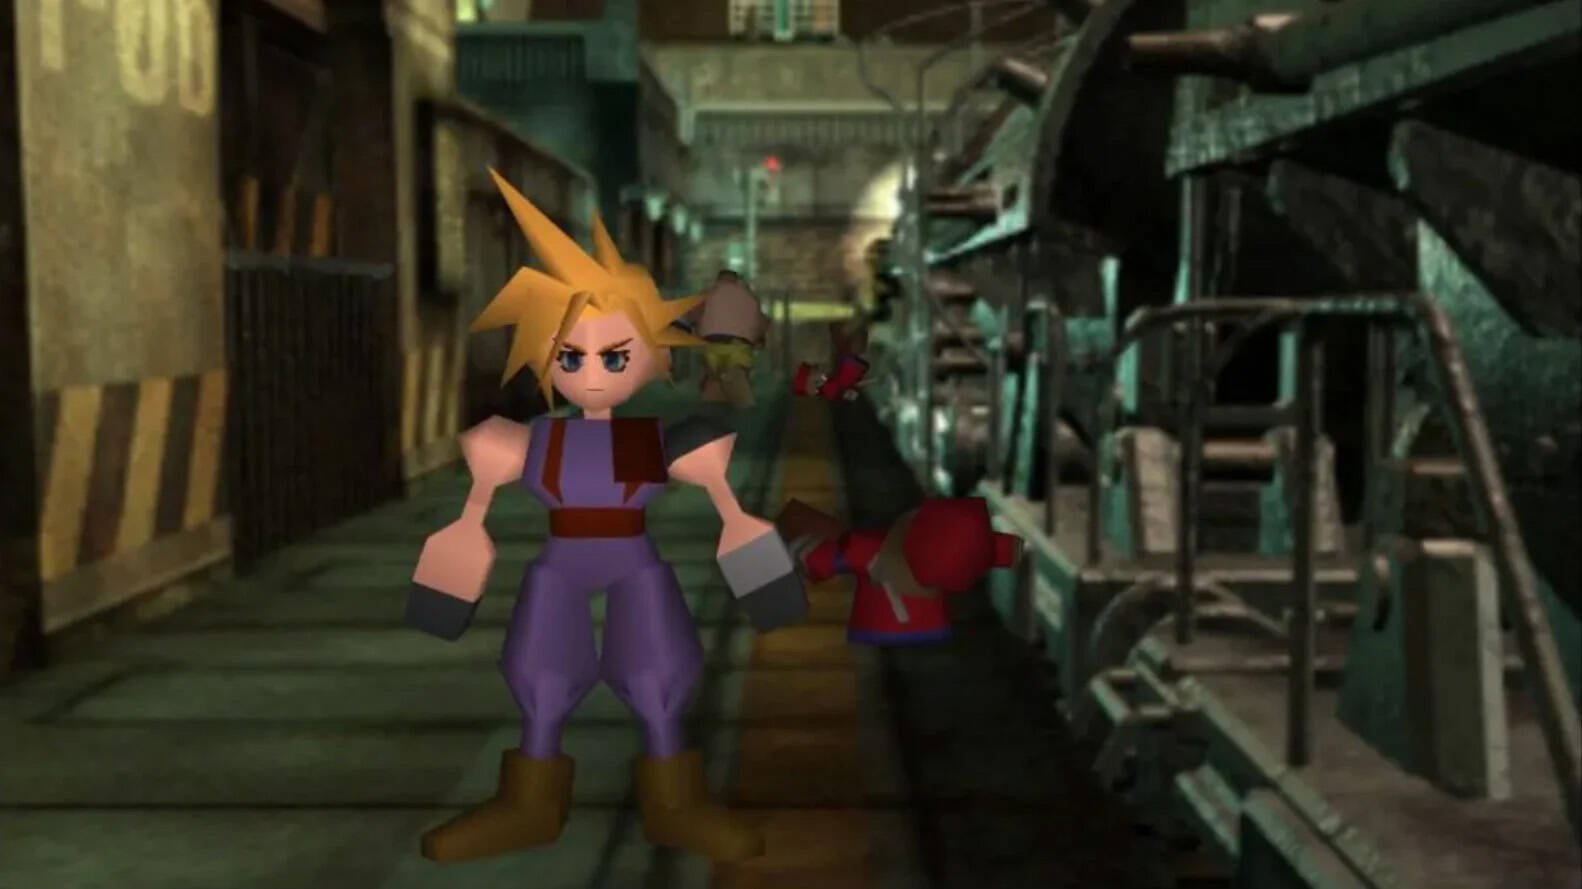 Come sarebbe l'originale Final Fantasy VII se fosse interamente doppiato? Così